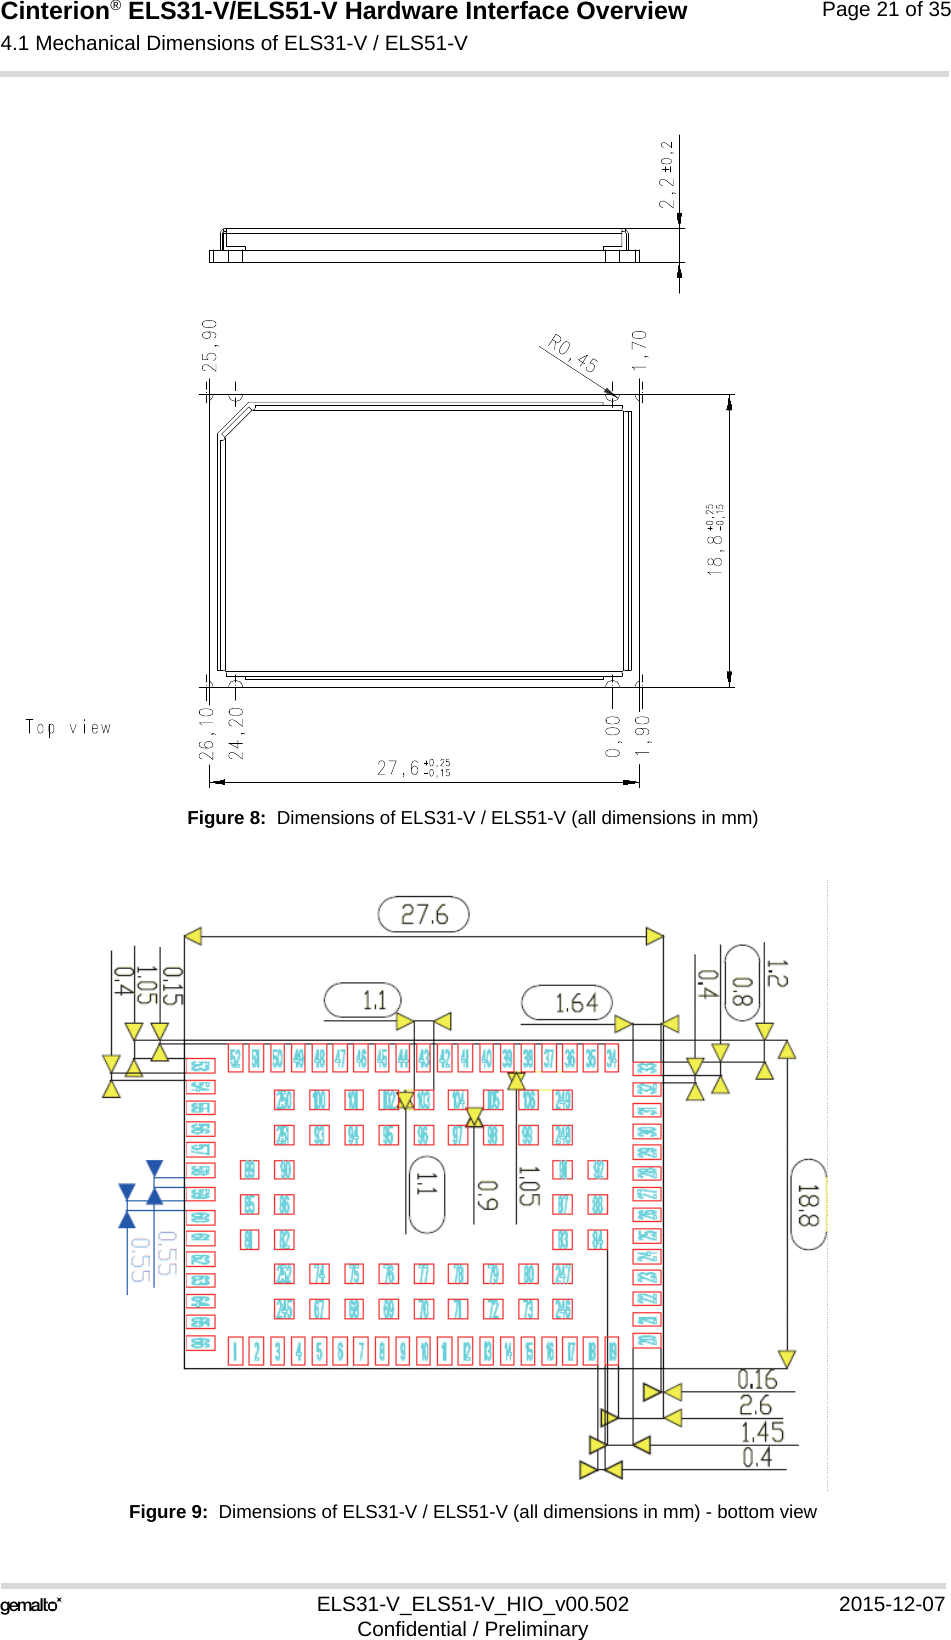 Cinterion® ELS31-V/ELS51-V Hardware Interface Overview4.1 Mechanical Dimensions of ELS31-V / ELS51-V21ELS31-V_ELS51-V_HIO_v00.502 2015-12-07Confidential / PreliminaryPage 21 of 35Figure 8:  Dimensions of ELS31-V / ELS51-V (all dimensions in mm)Figure 9:  Dimensions of ELS31-V / ELS51-V (all dimensions in mm) - bottom view